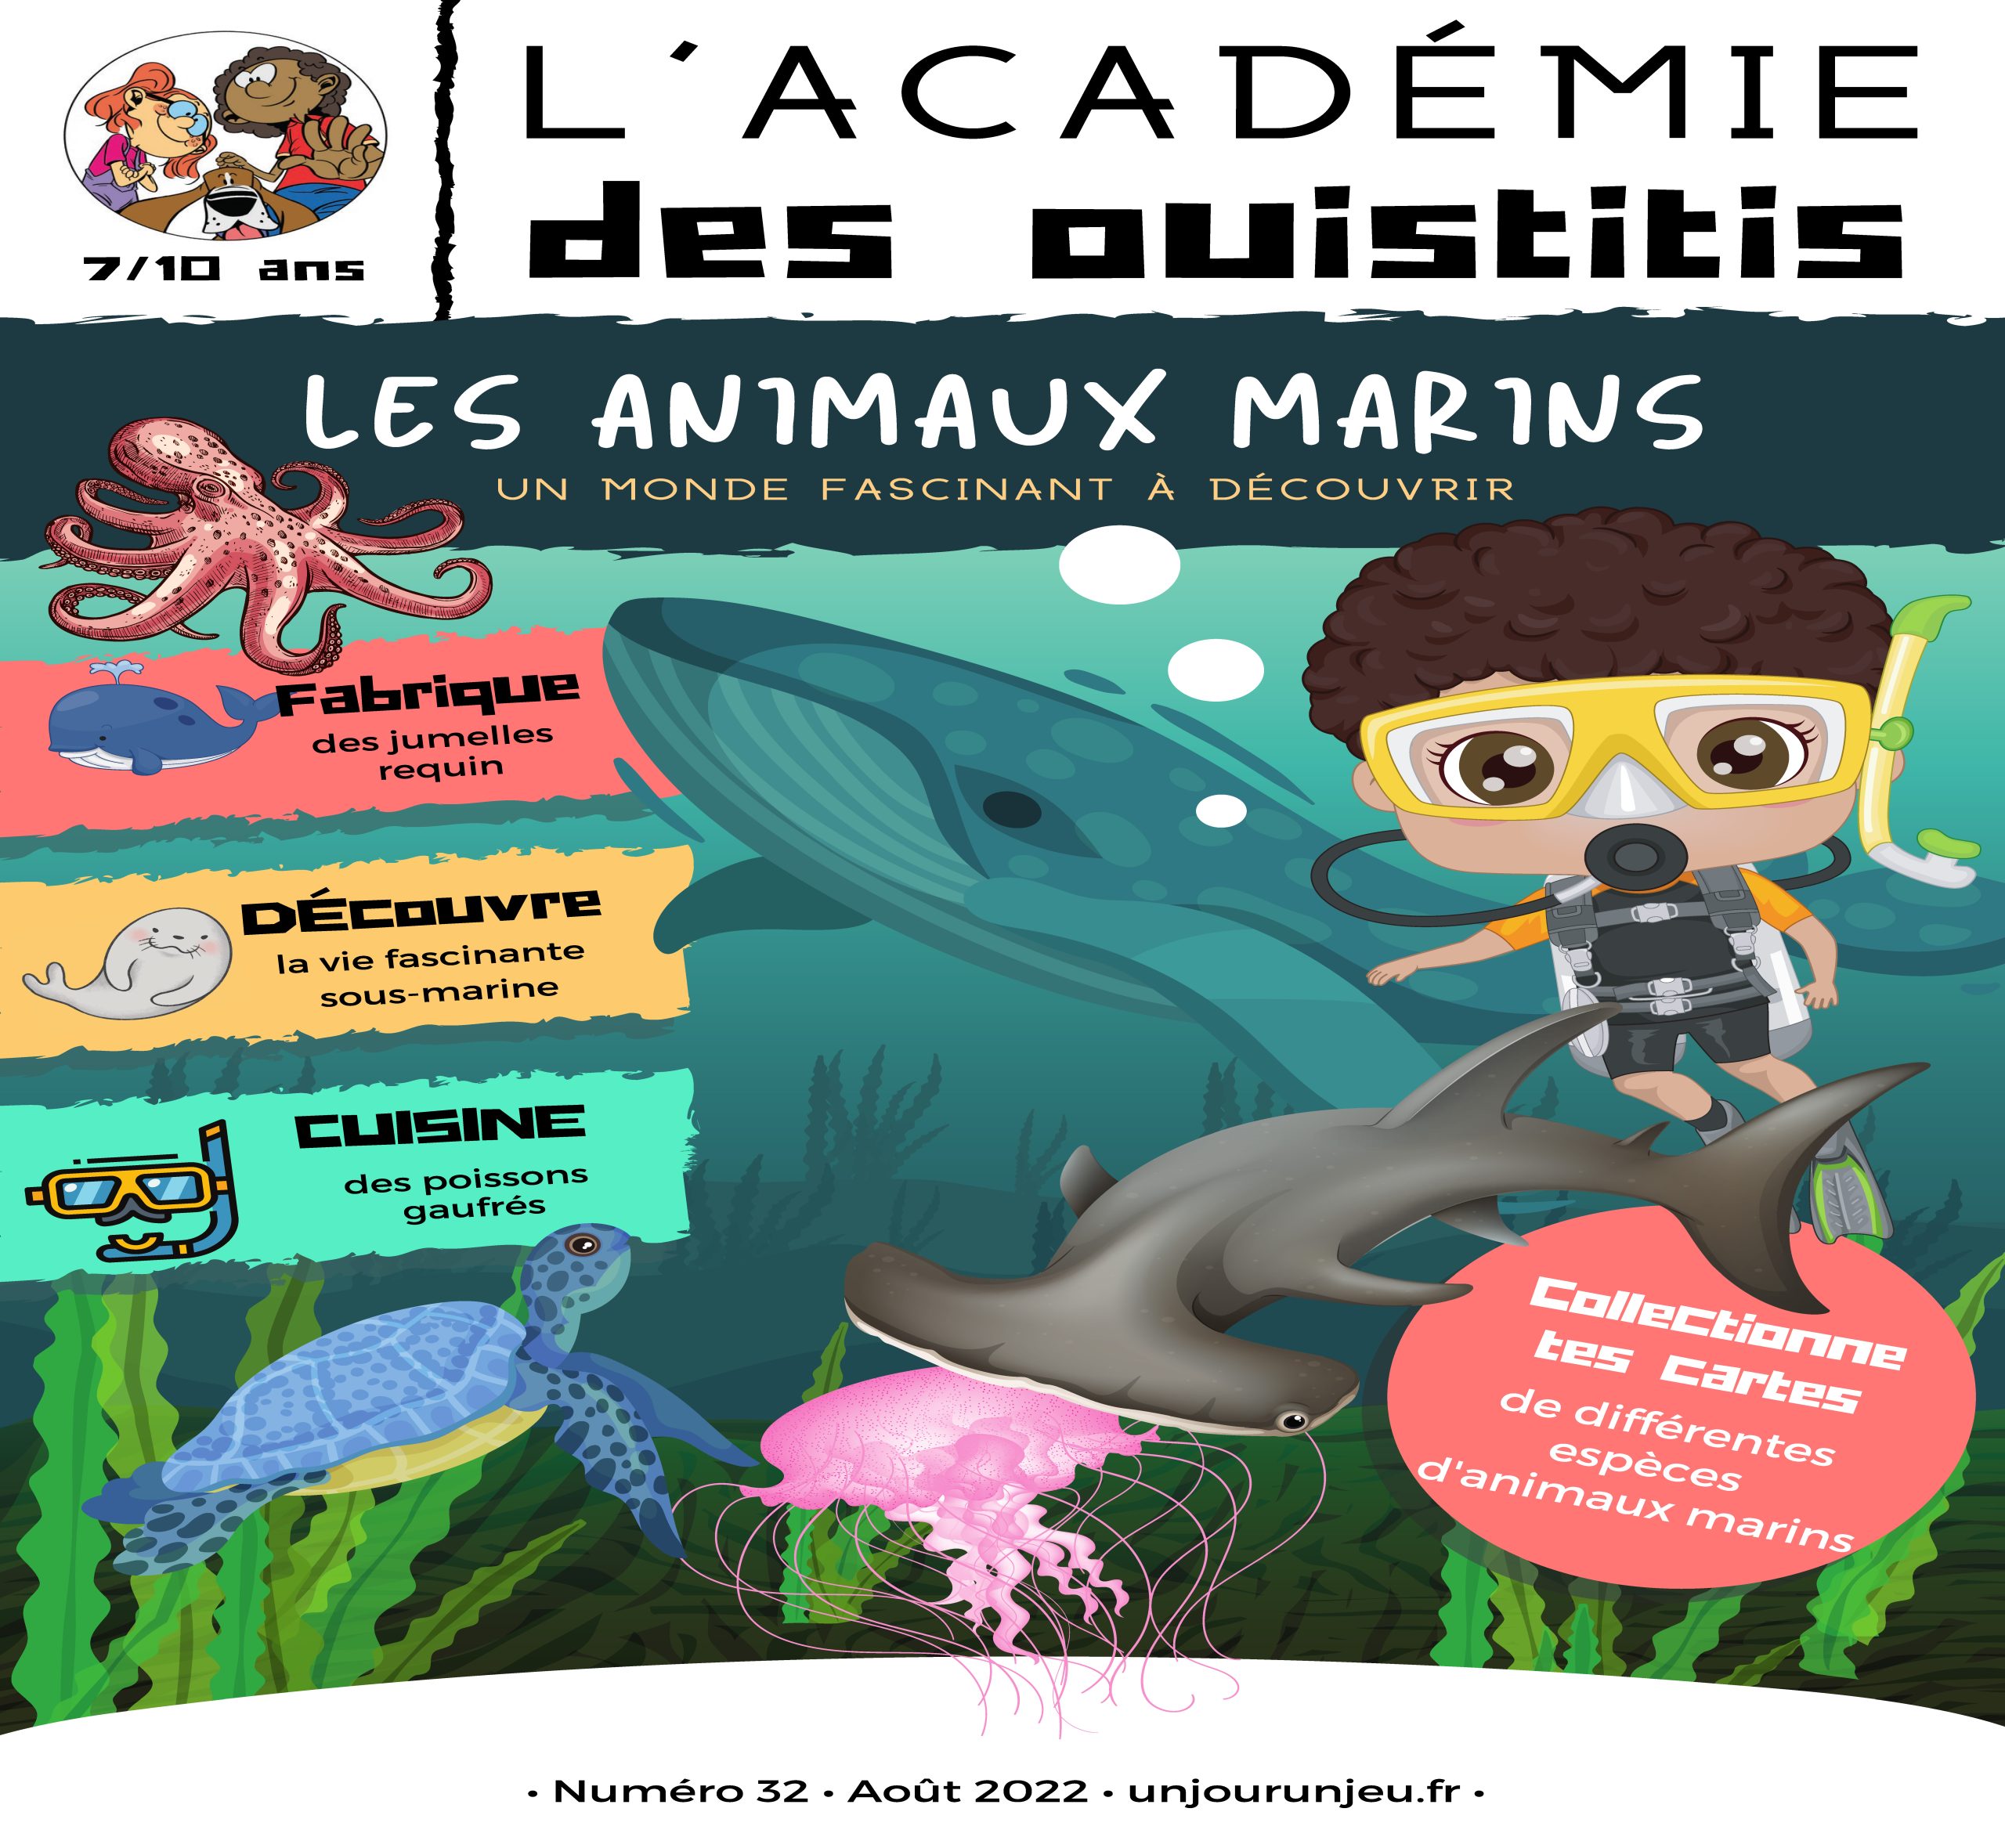 L'Académie des Ouistitis et les animaux marins